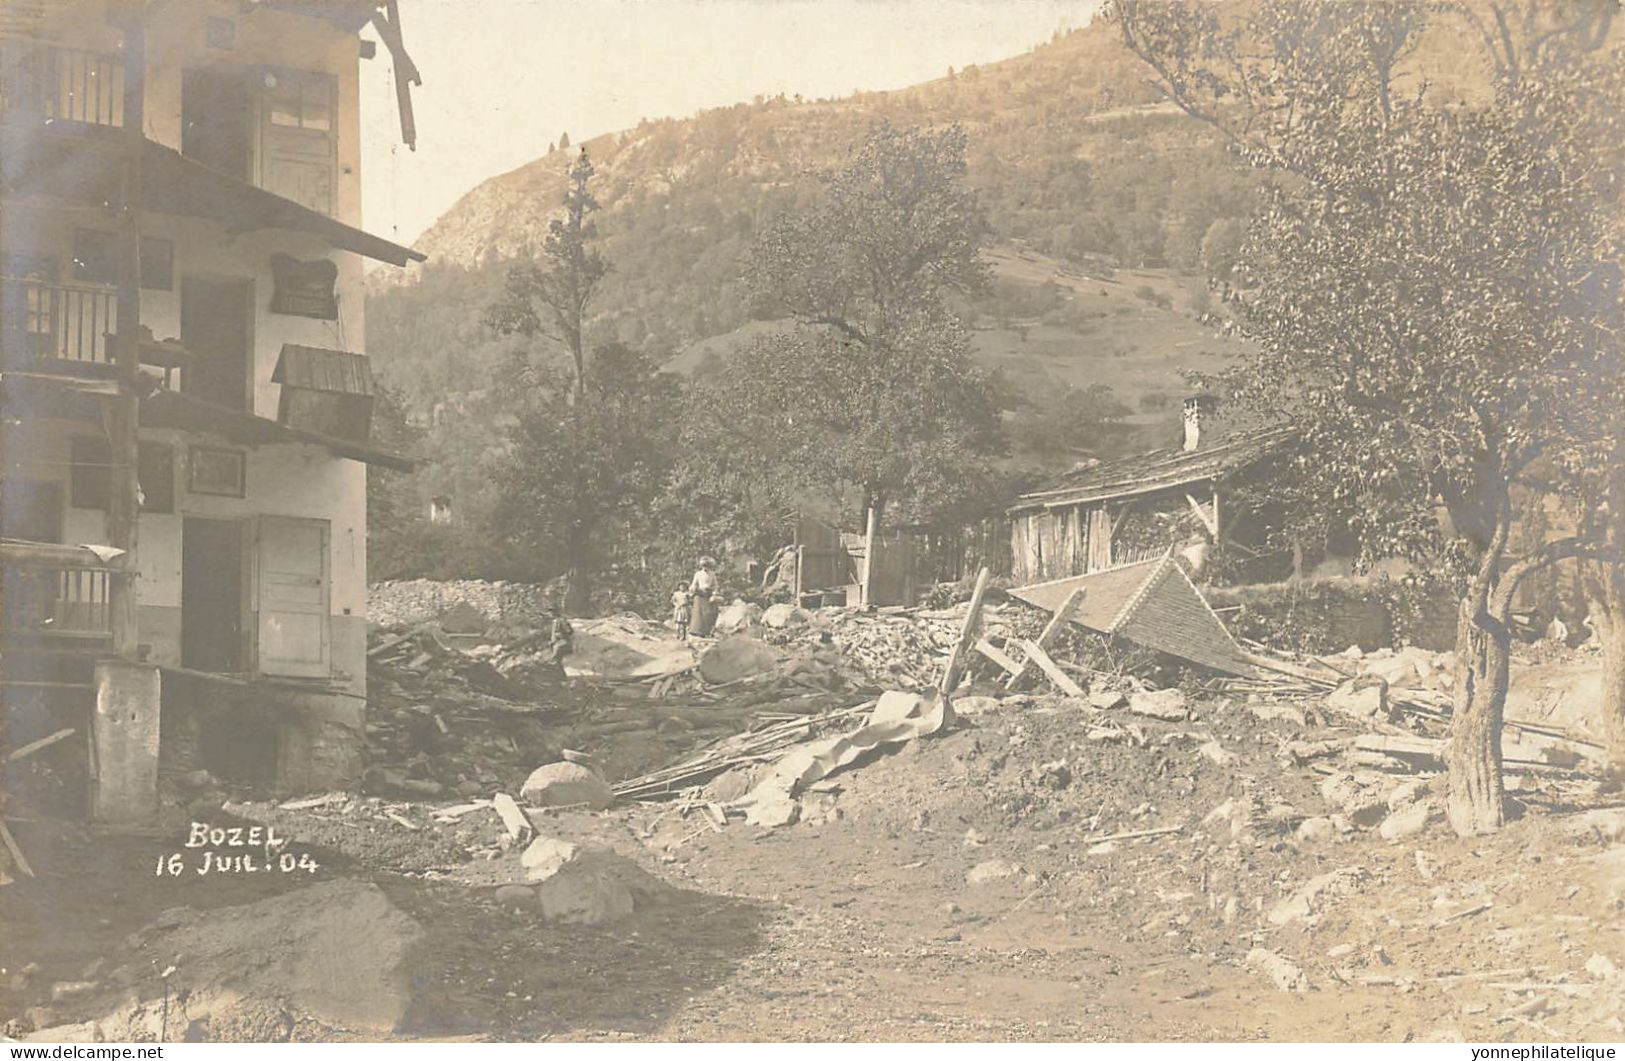 73 - SAVOIE - BOZEL - Carte Photo 16 Juillet 1904 - Catastrophe - 10137 - Bozel